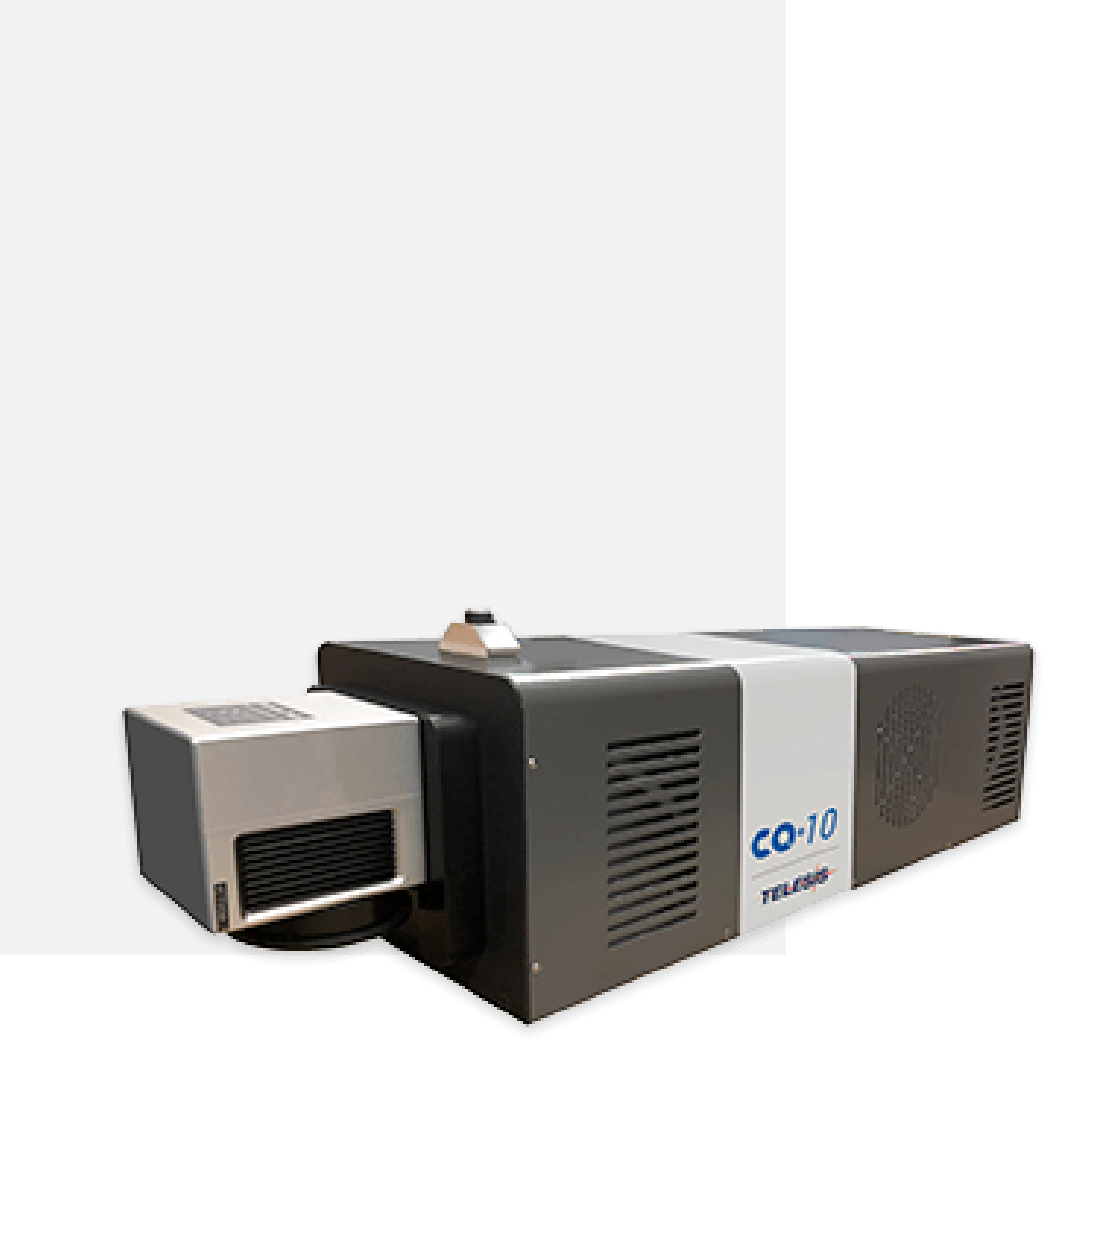 CO2 - 10 – 10 Watt Laser Marking System